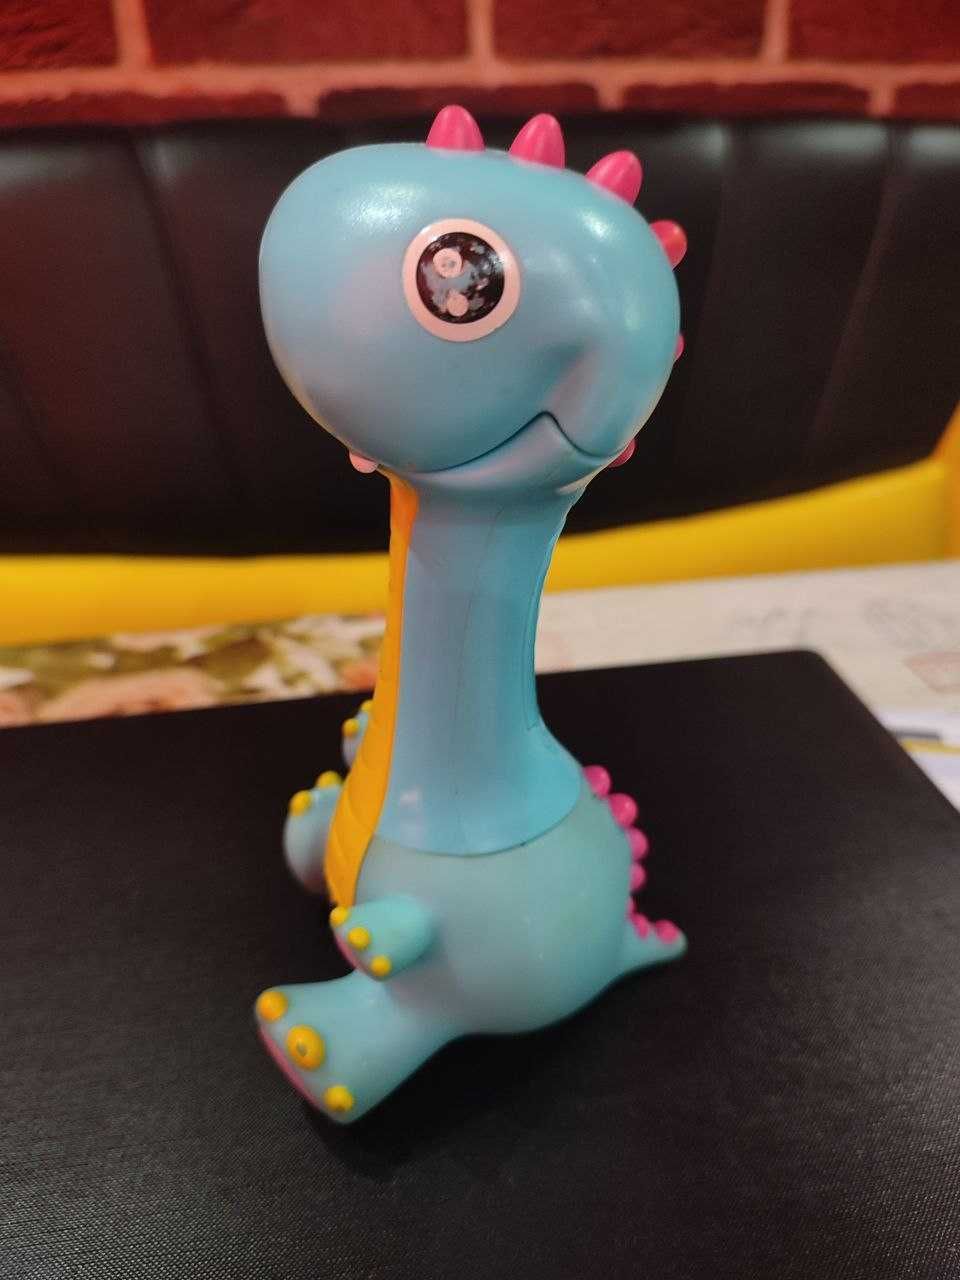 Интерактивная игрушка "Динозавр Рык" от Tomy